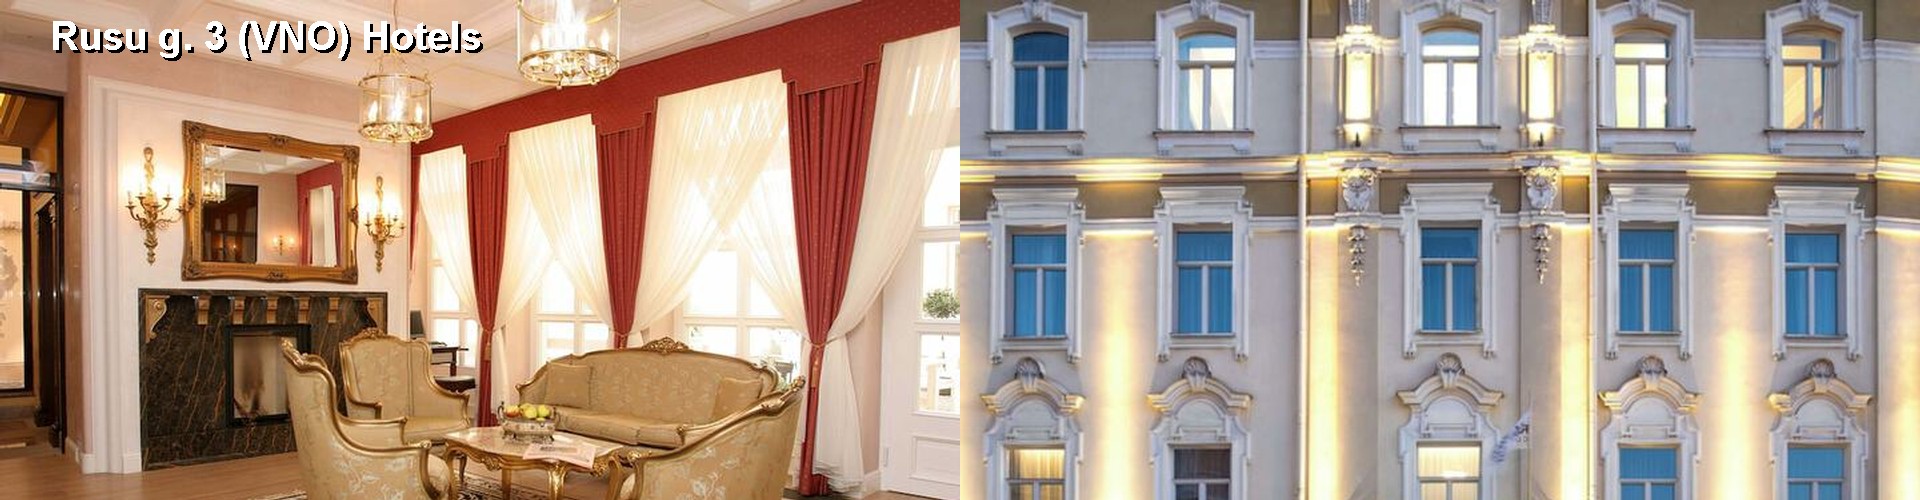 5 Best Hotels near Rusu g. 3 (VNO)